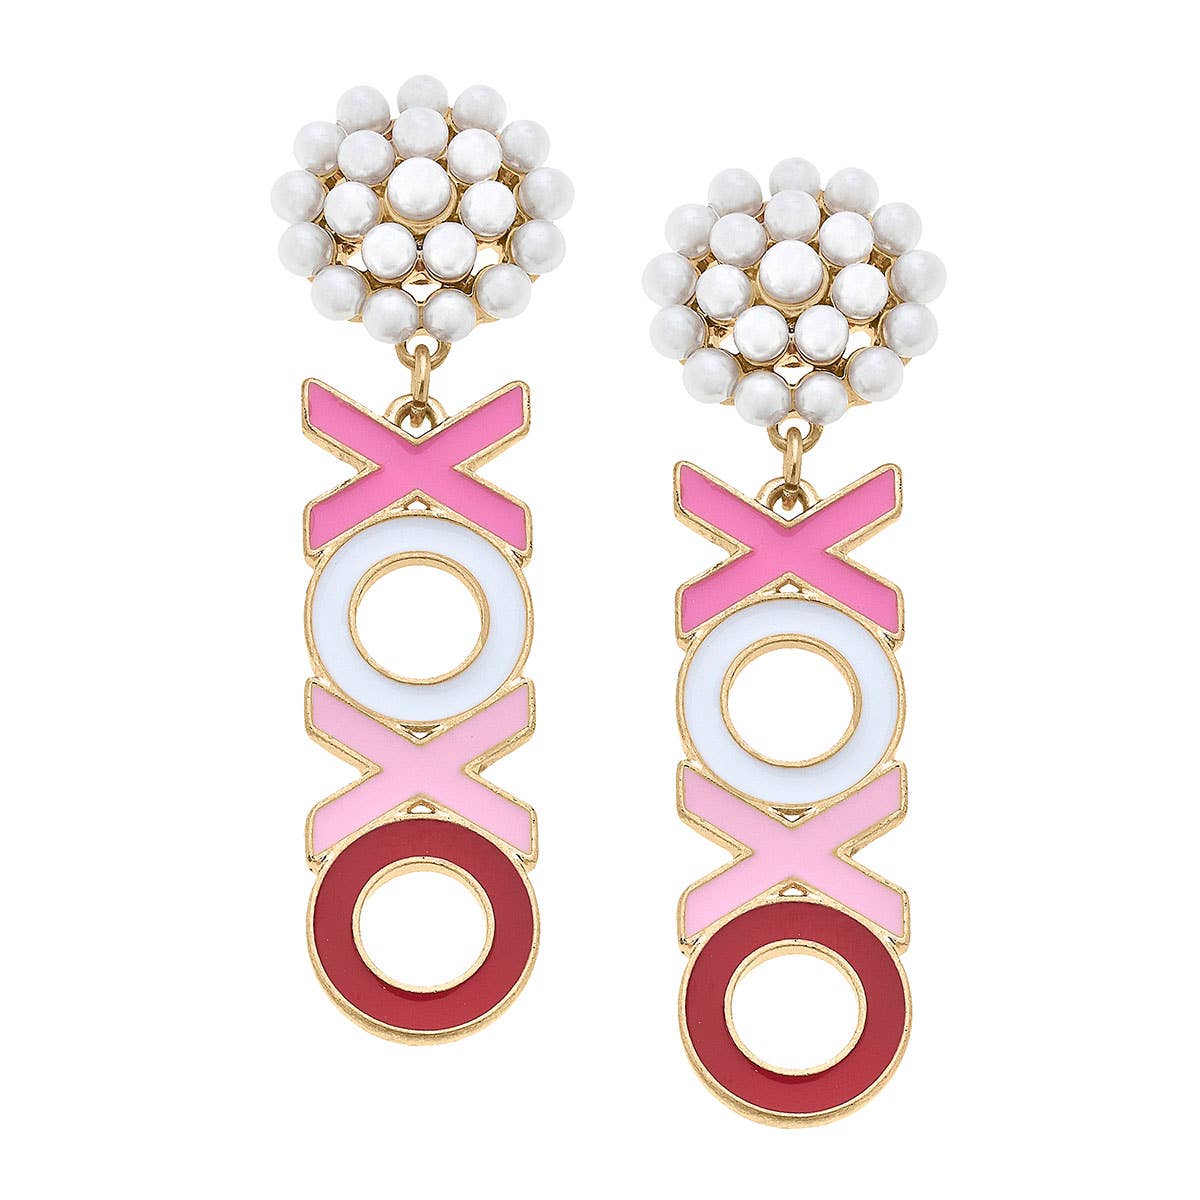 XOXO Enamel Earrings in Pink & Red